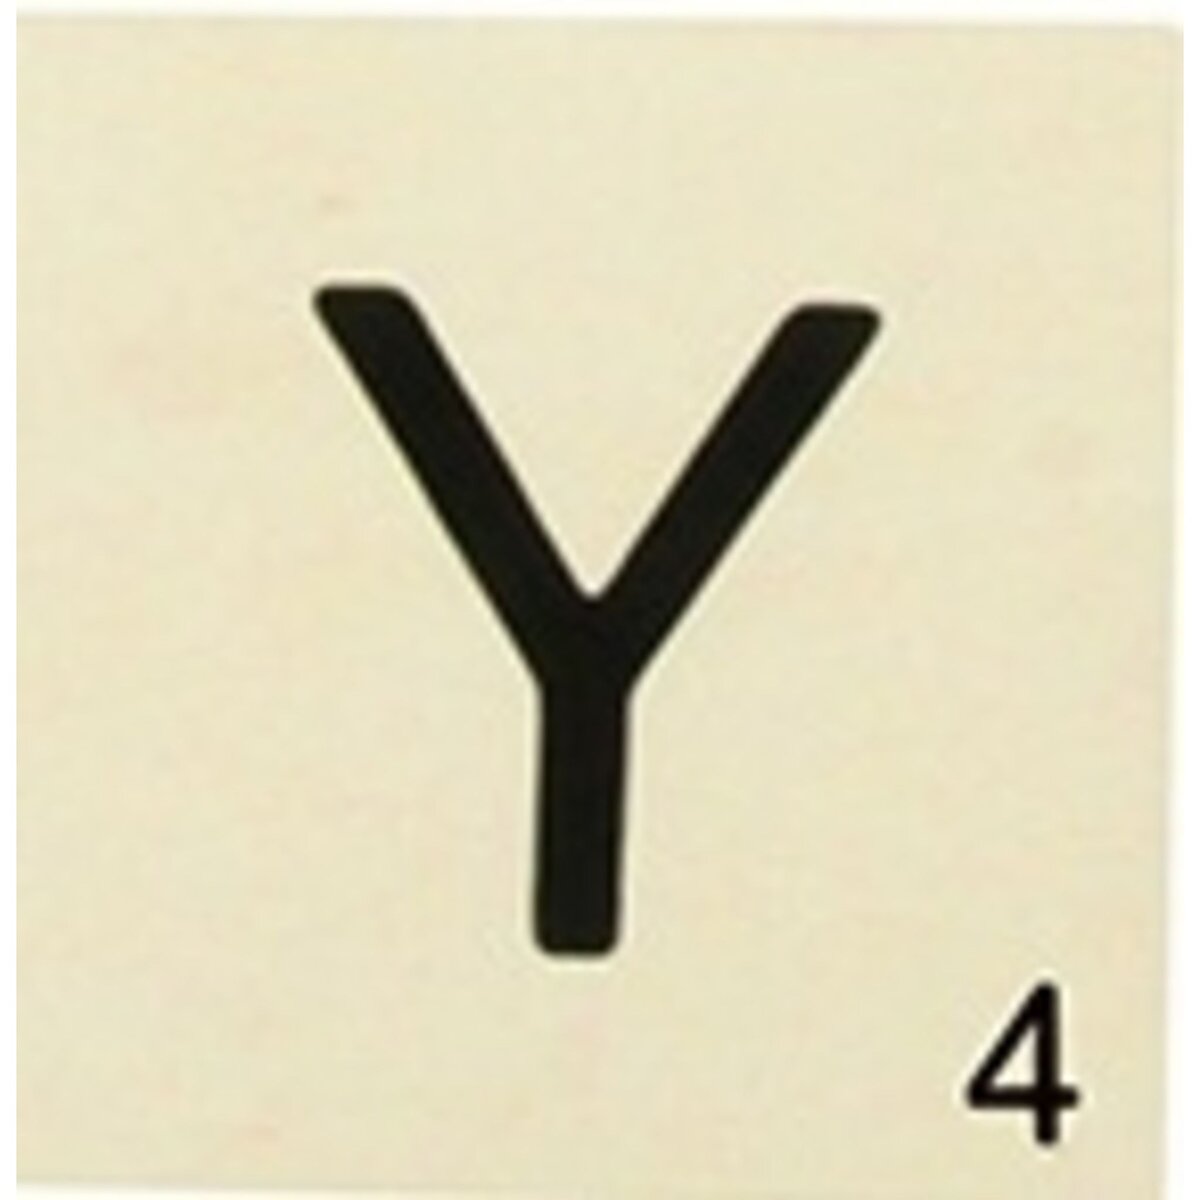 Lettres en bois déco façon Scrabble - 14,9 x 10,5 cm - Forme en